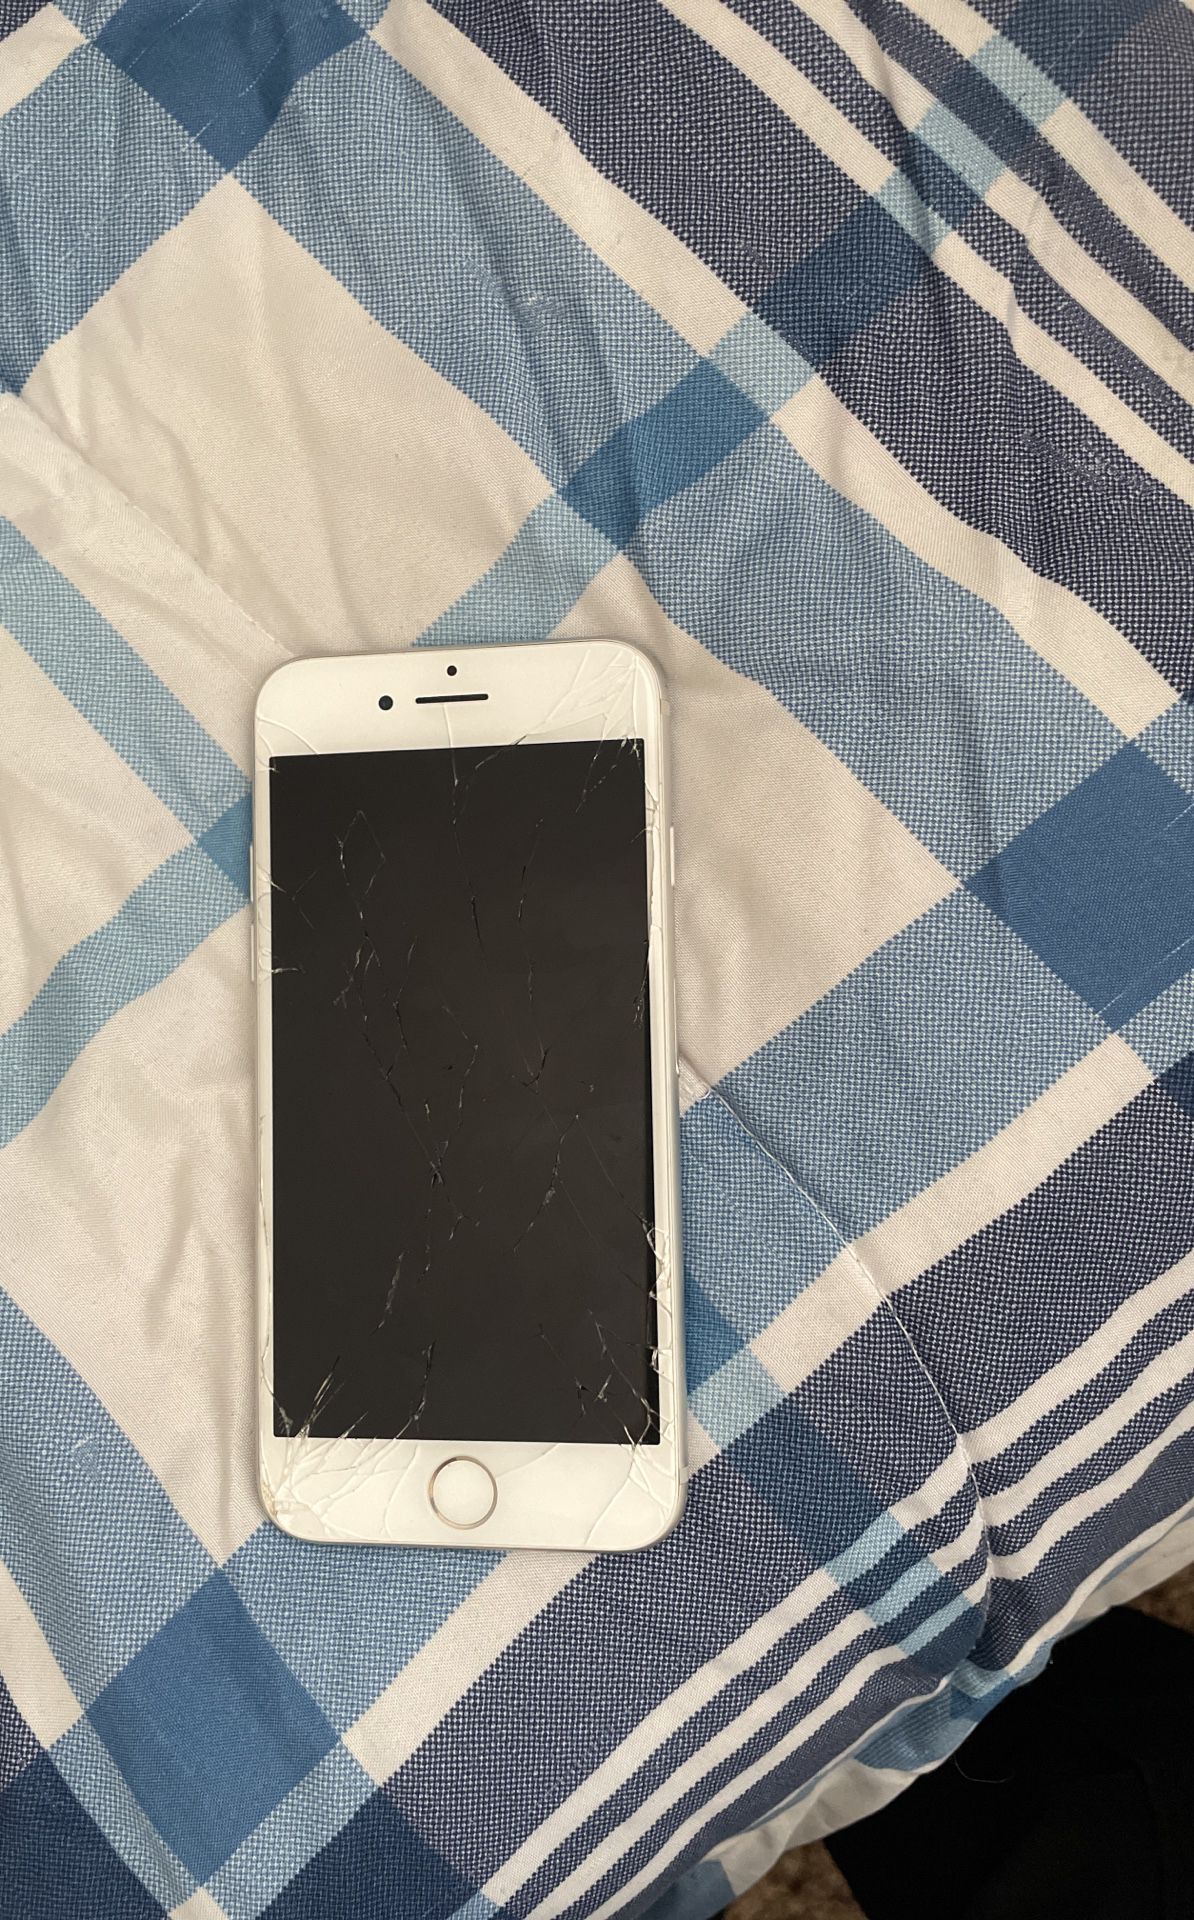 Cracked iPhone 7